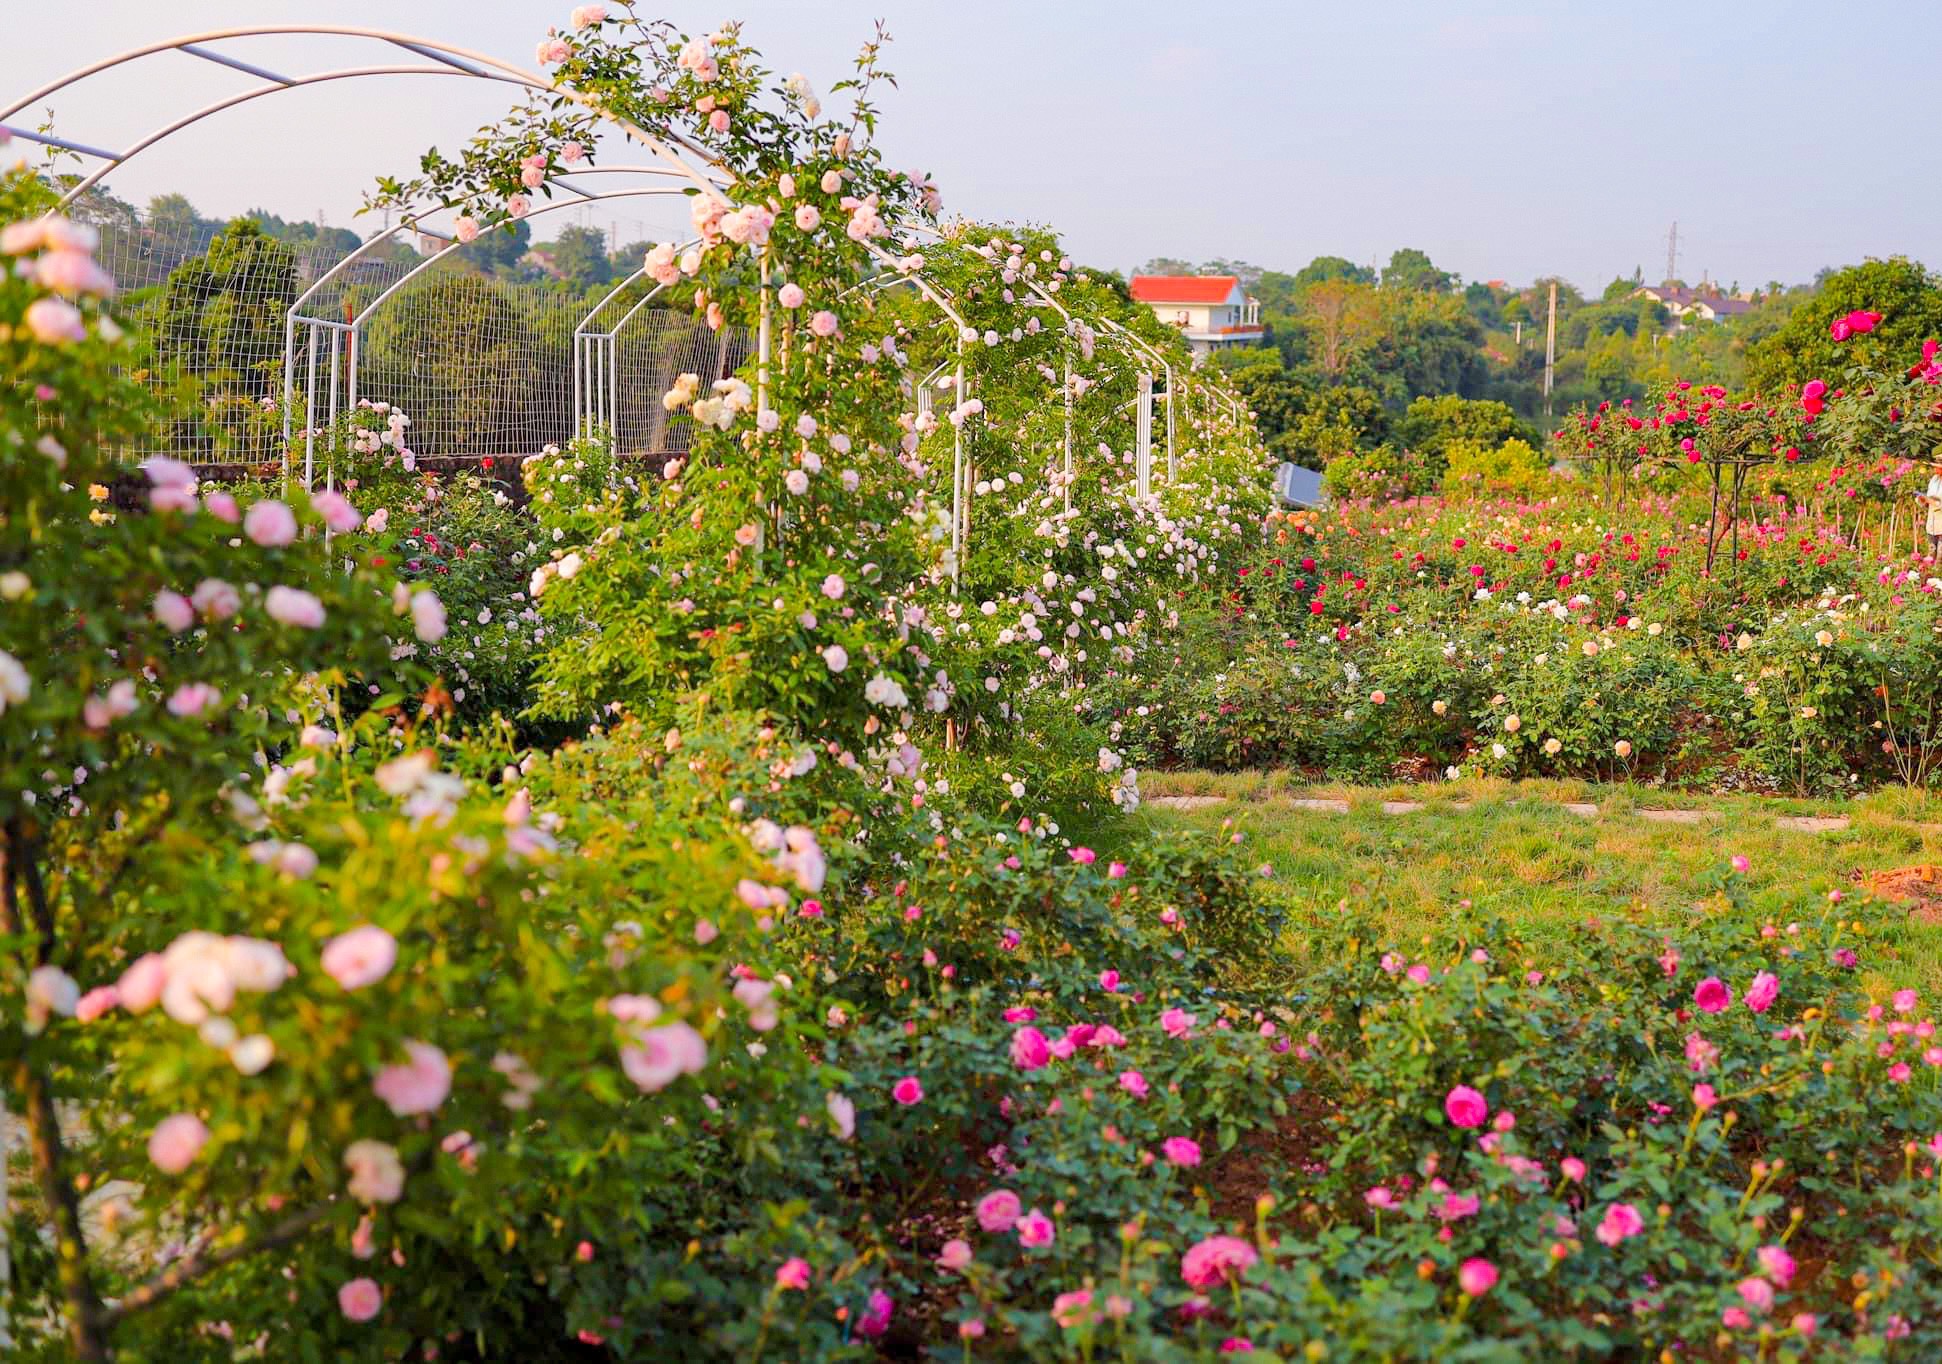 Khám phá vườn hoa hồng rộng 6.000m2 tại Hà Nội - Ảnh 1.